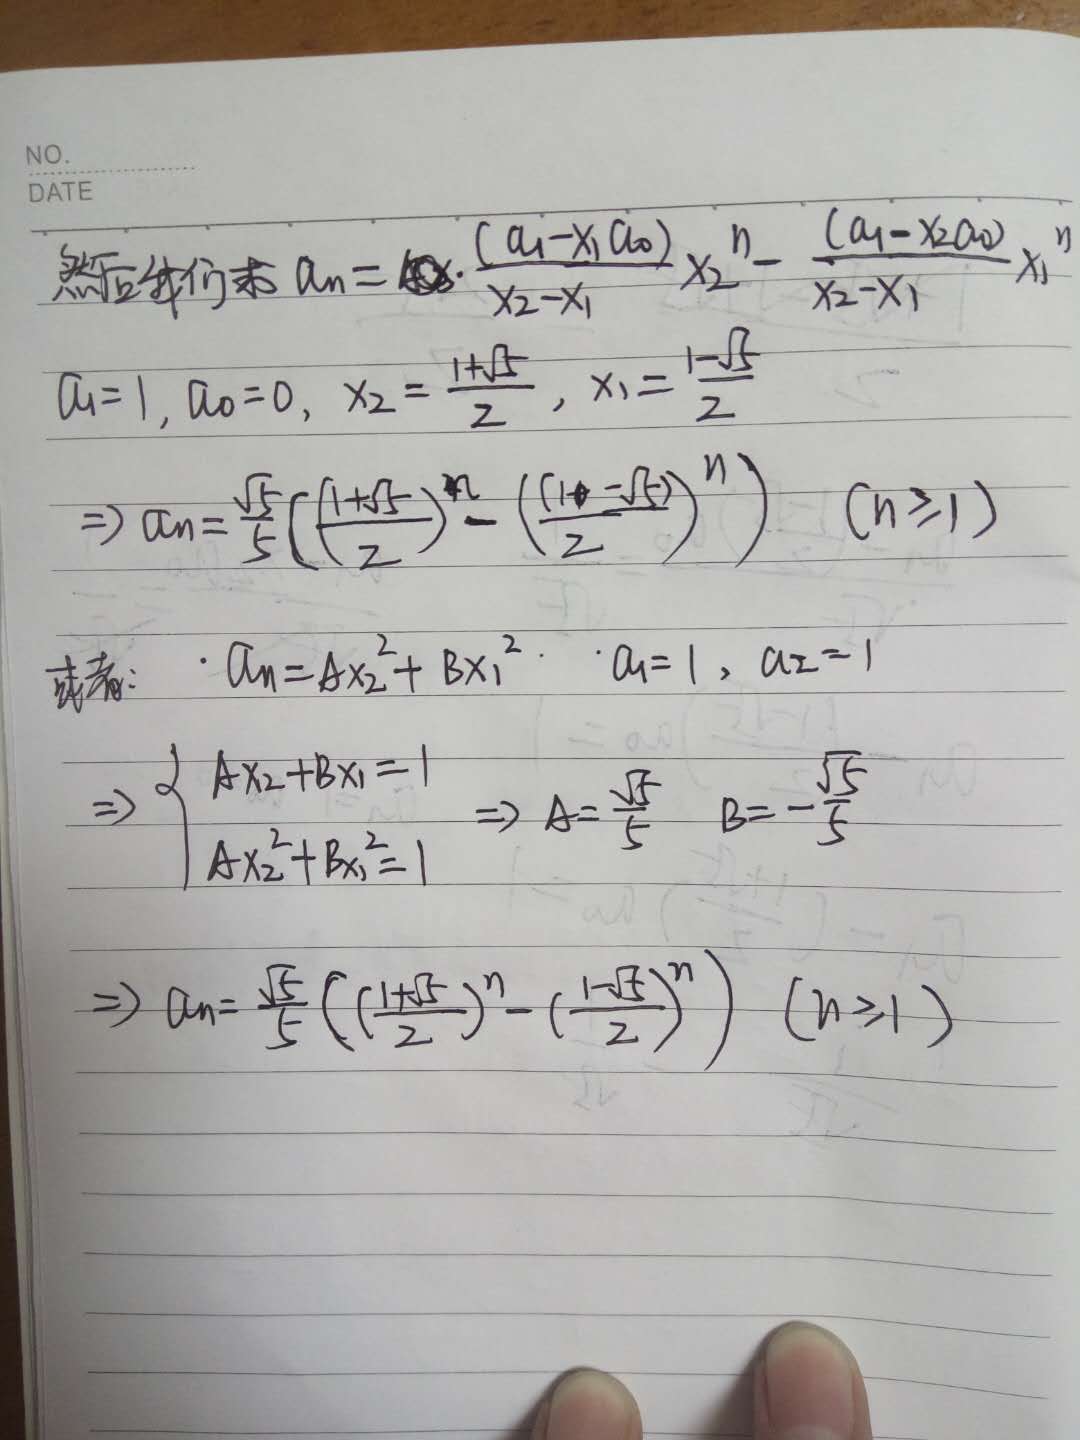 求斐波那契数列的特征方程和通项公式